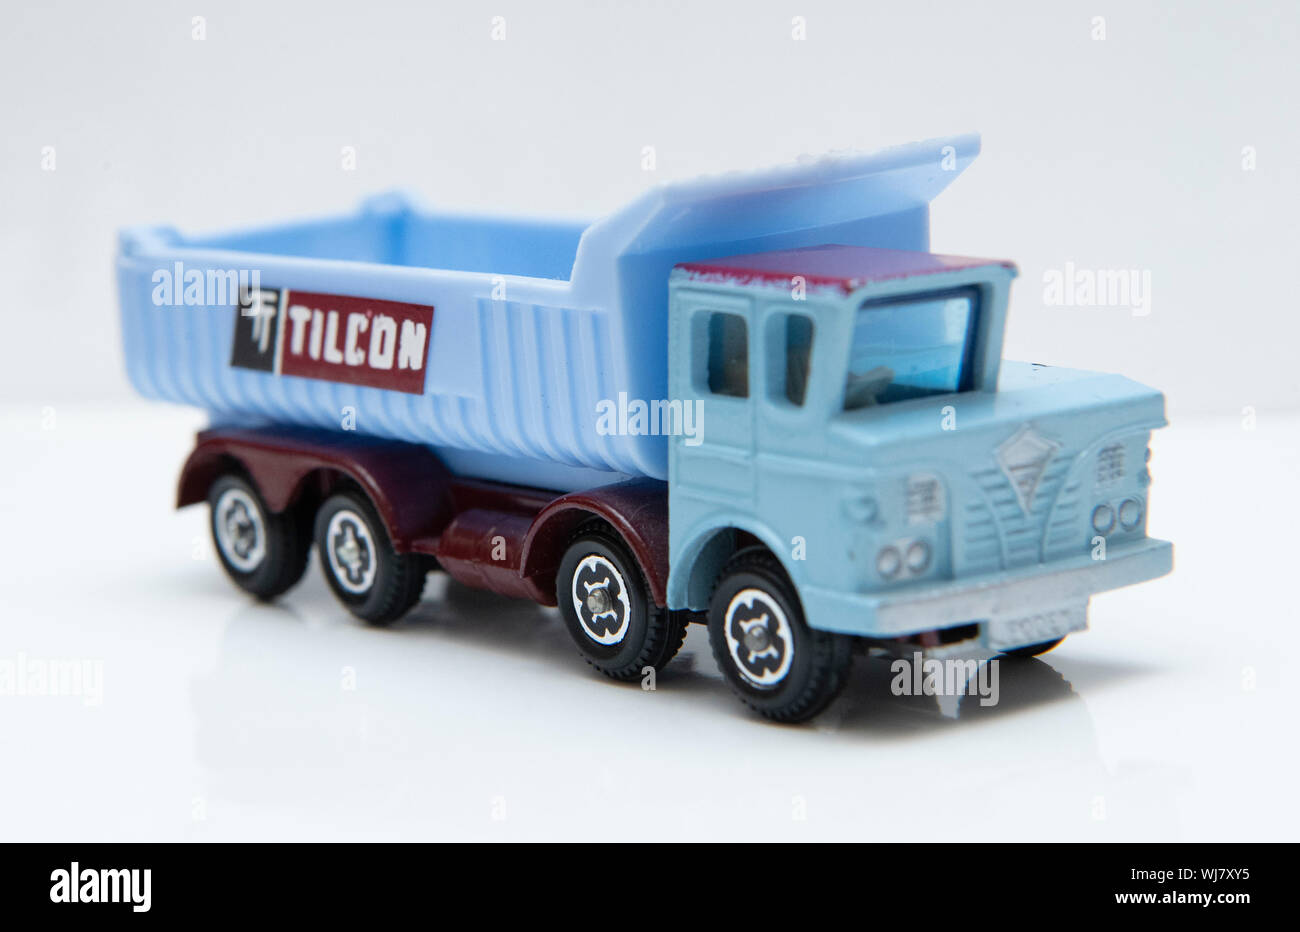 Lone Star Impy Foden la moitié 'Cabine Builders Supply' camion benne camion jouet Modèle Tilcon Banque D'Images